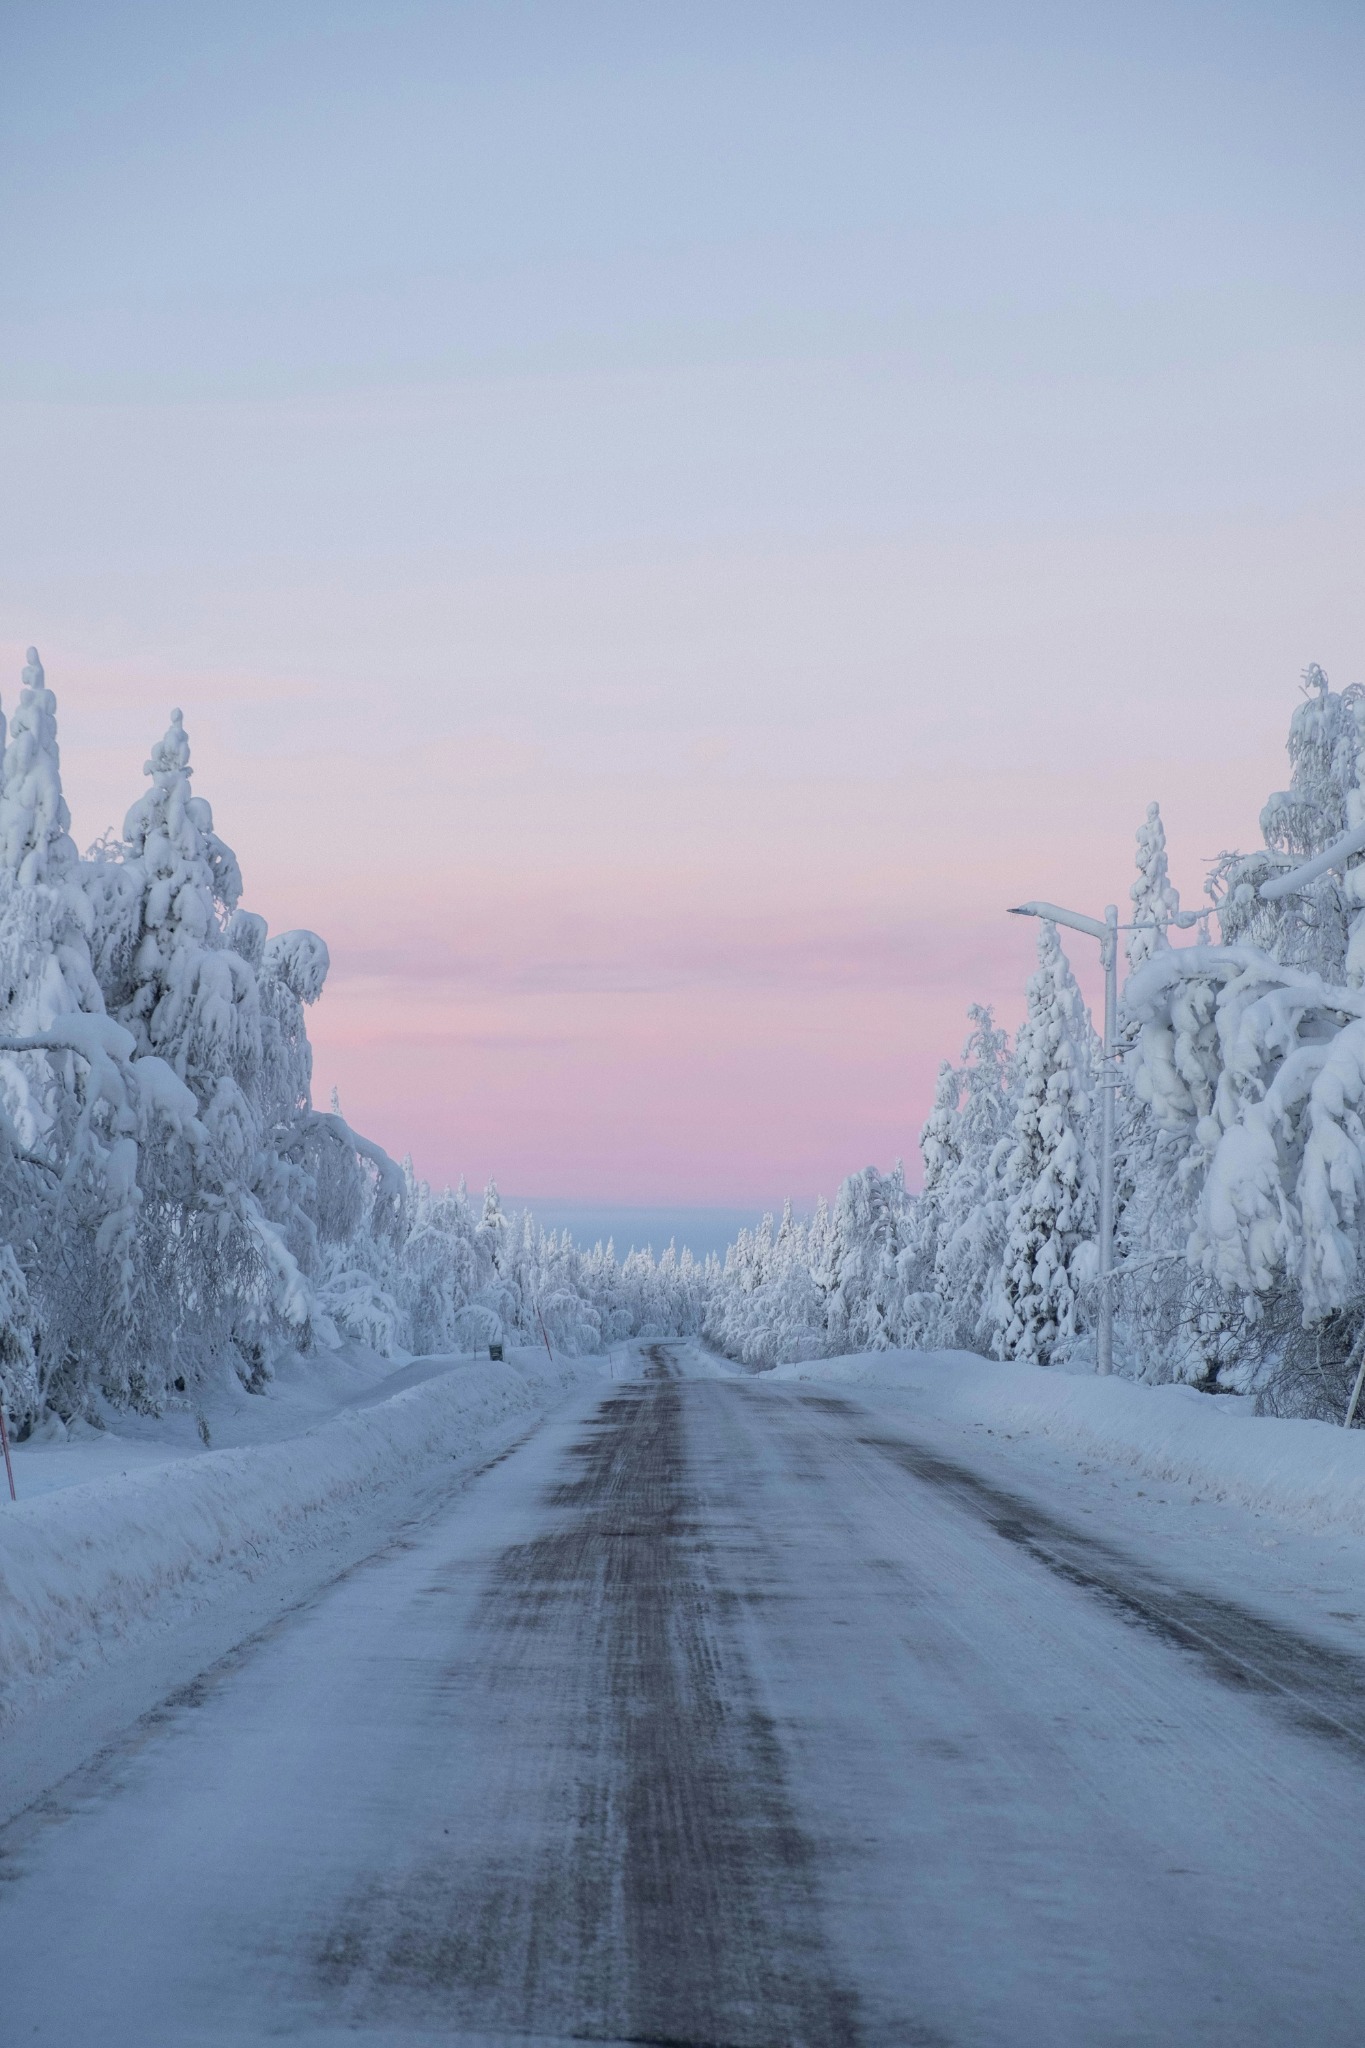 Snowy road pink sky